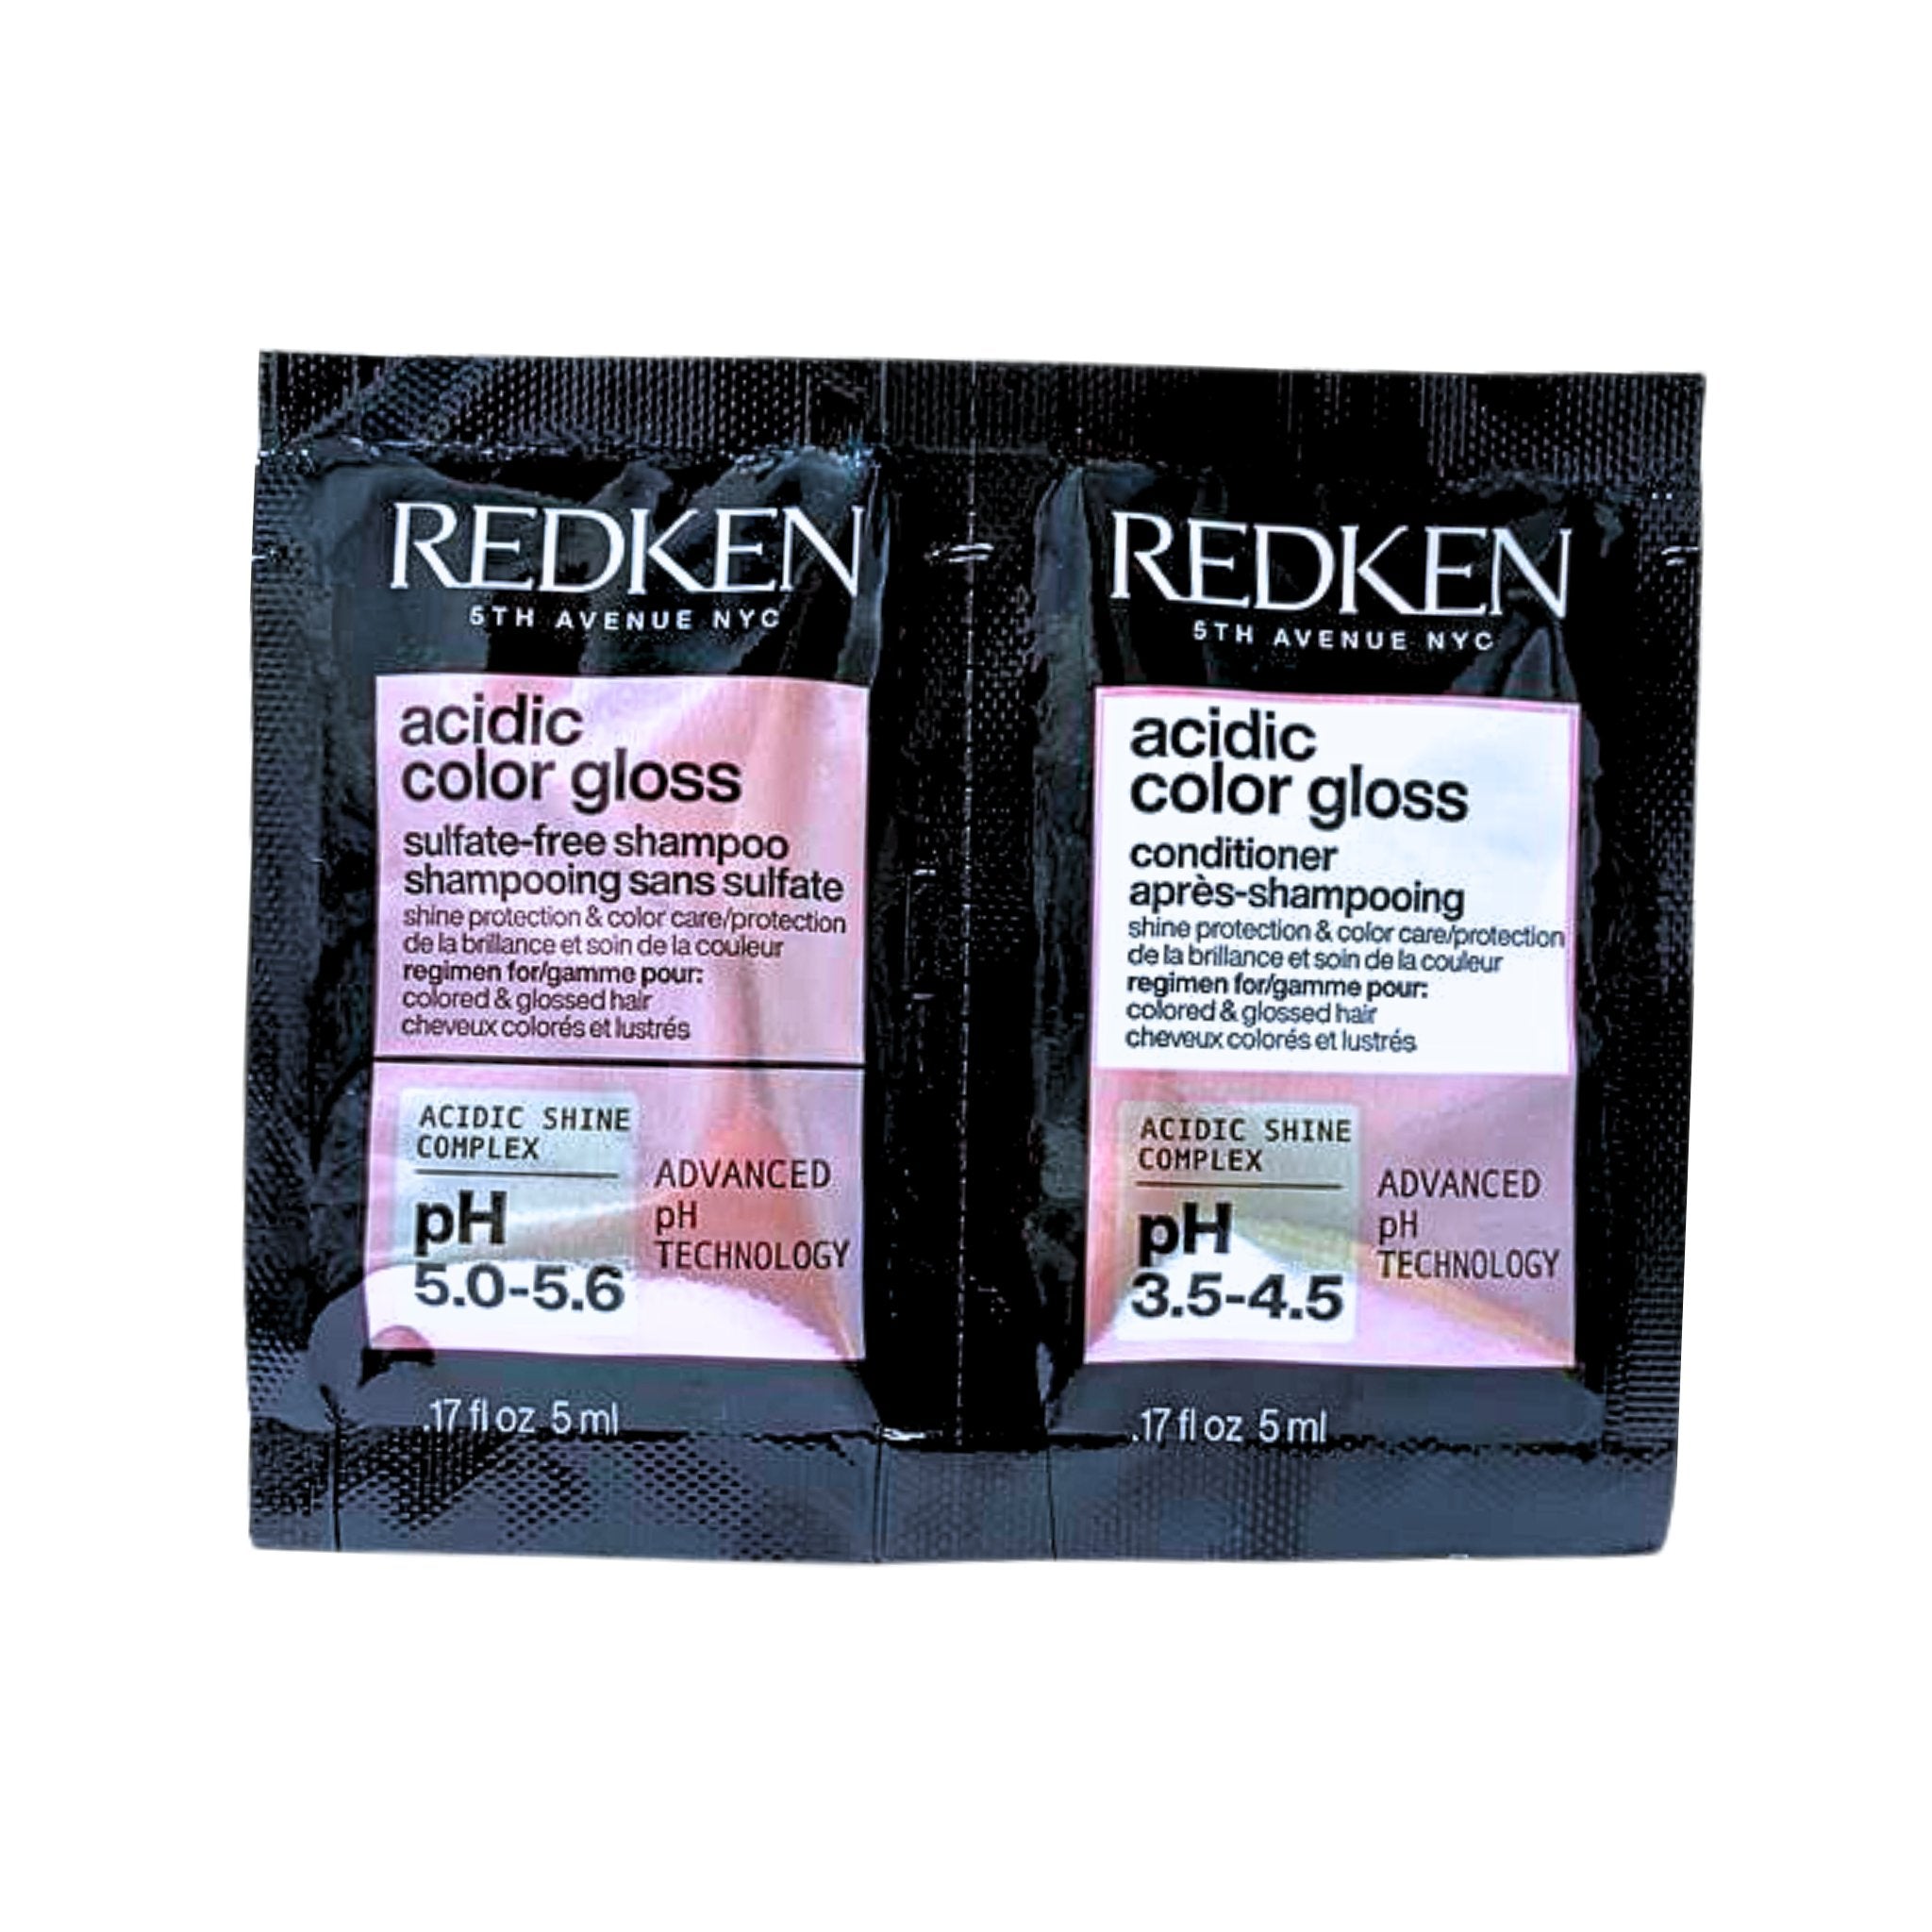 Redken. Acidic Color Gloss Shampoing et Revitalisant - 2 X 5 ml (Promo Fête de la Reine) - Concept C. Shop